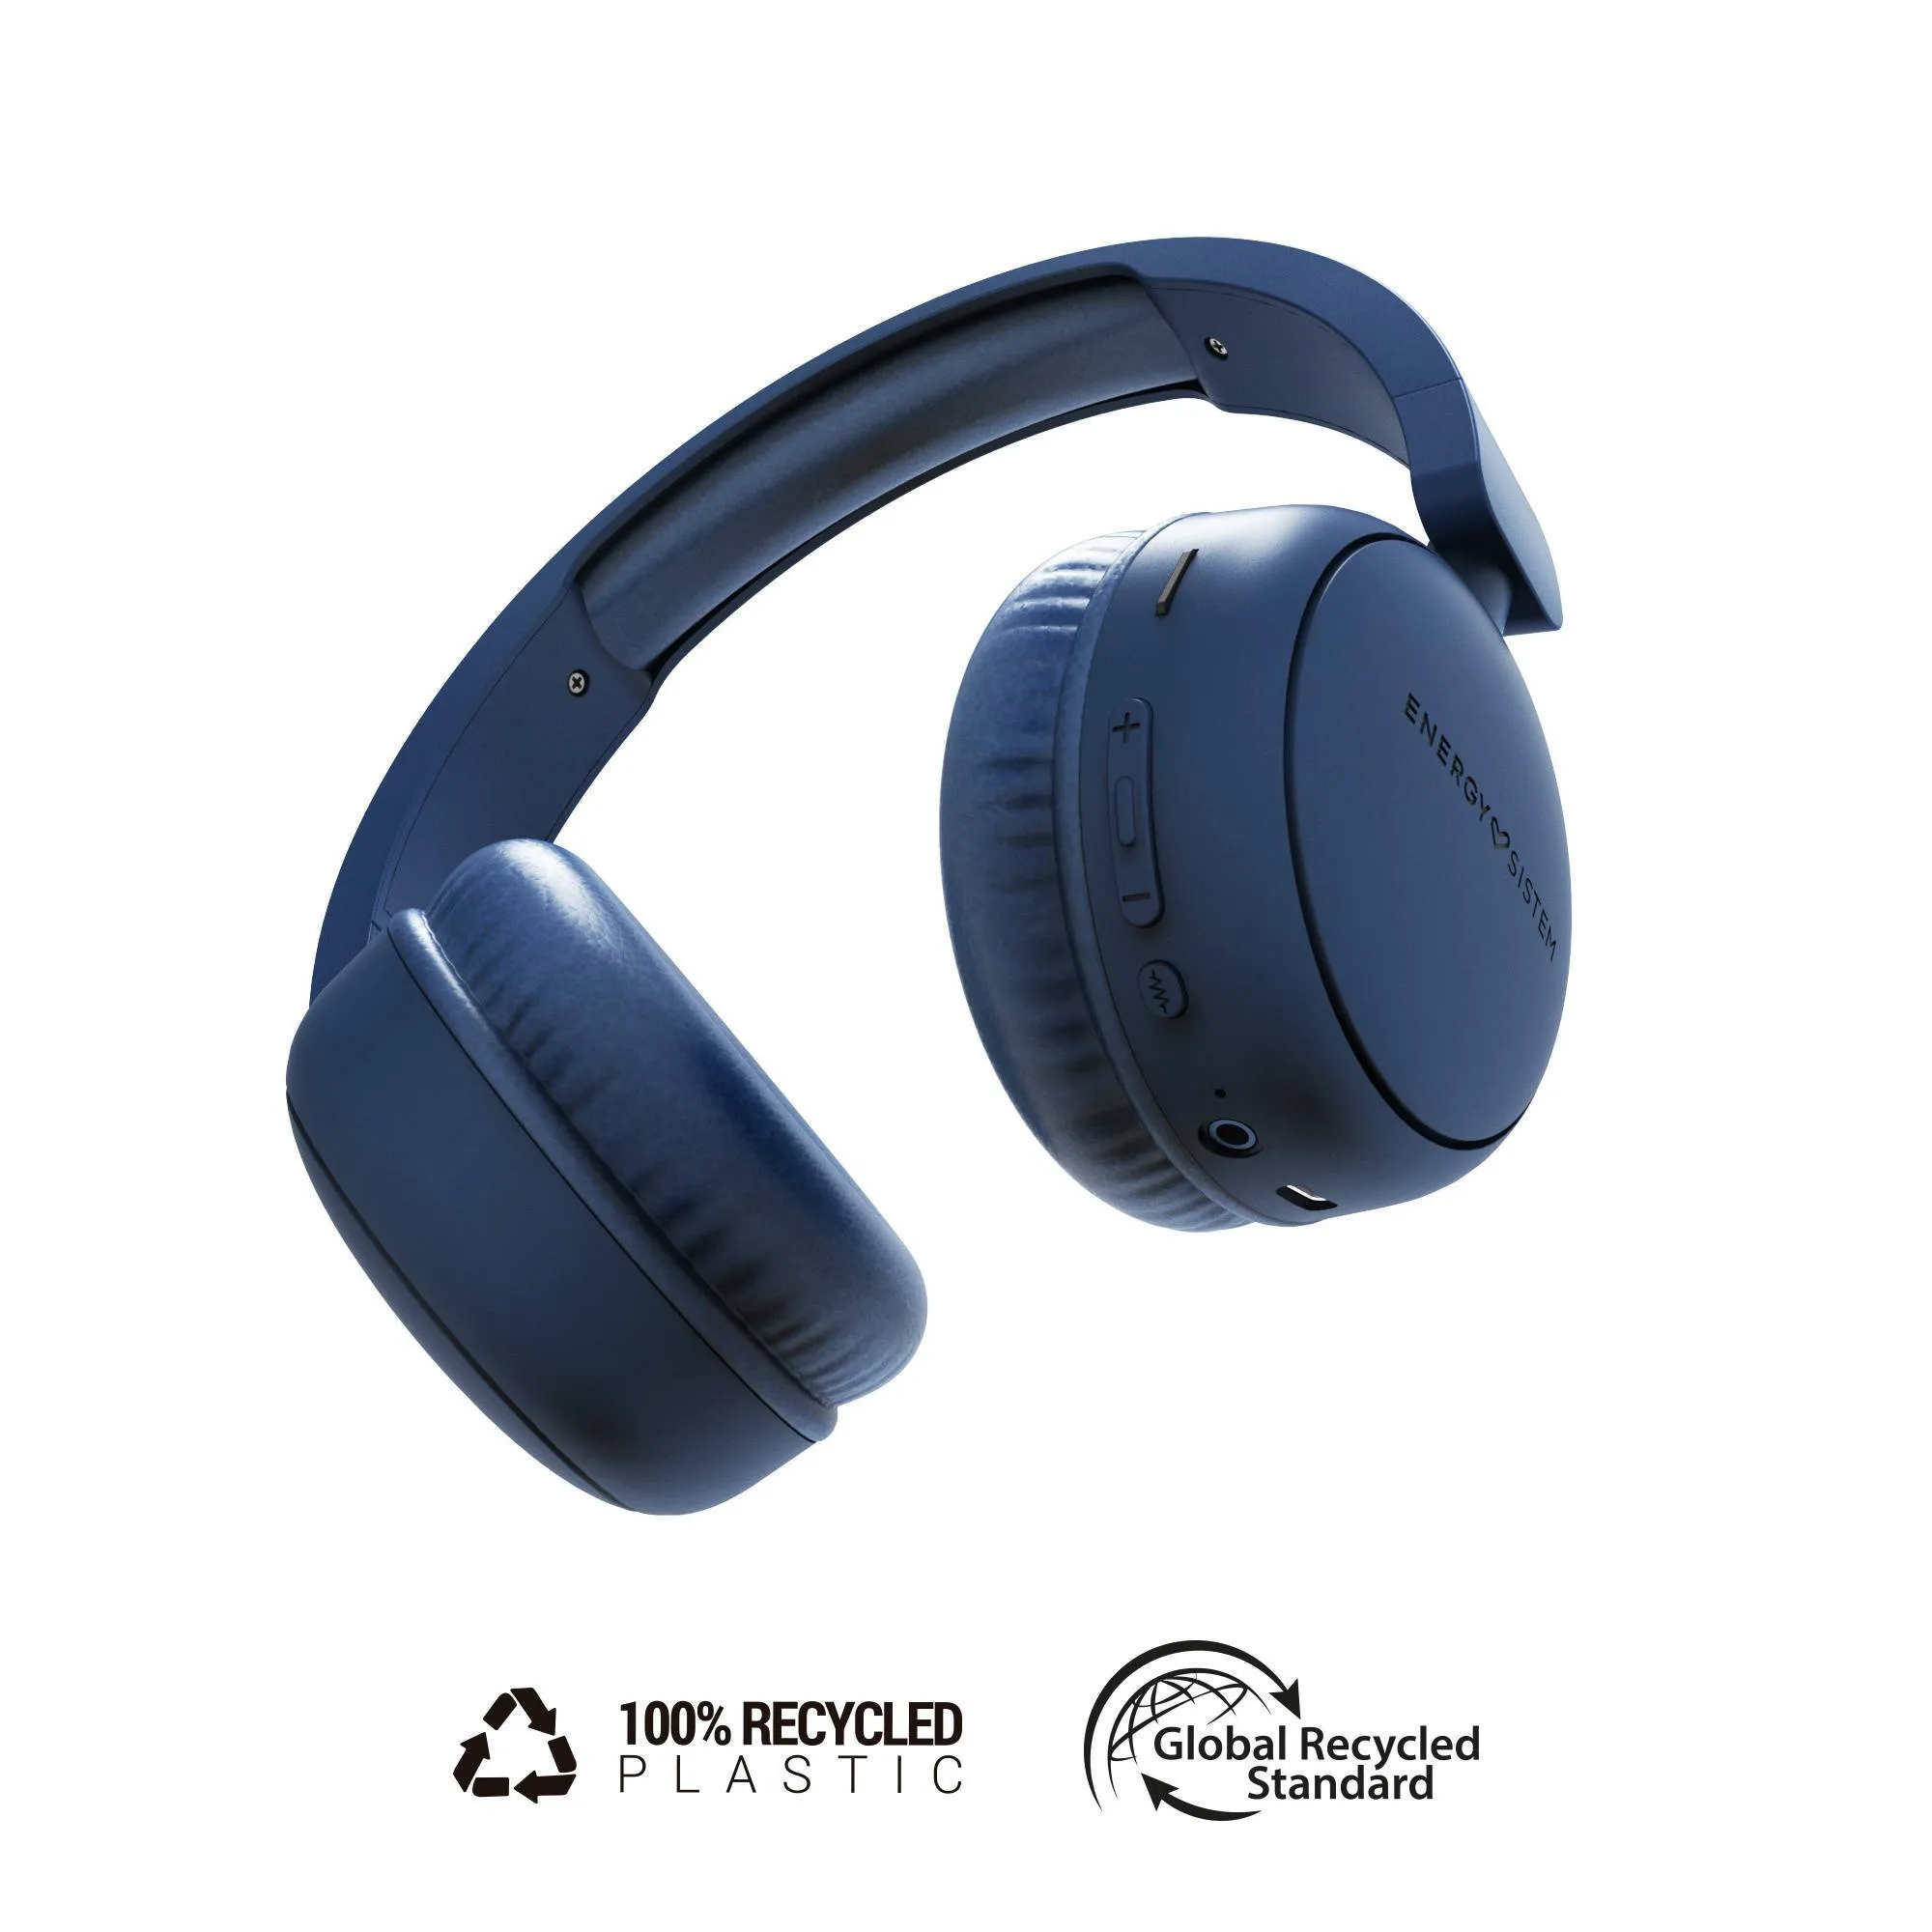 Auriculares Bluetooth Radio Color indigo fabricados con plástico 100% reciclado y hasta 16h de autonomía